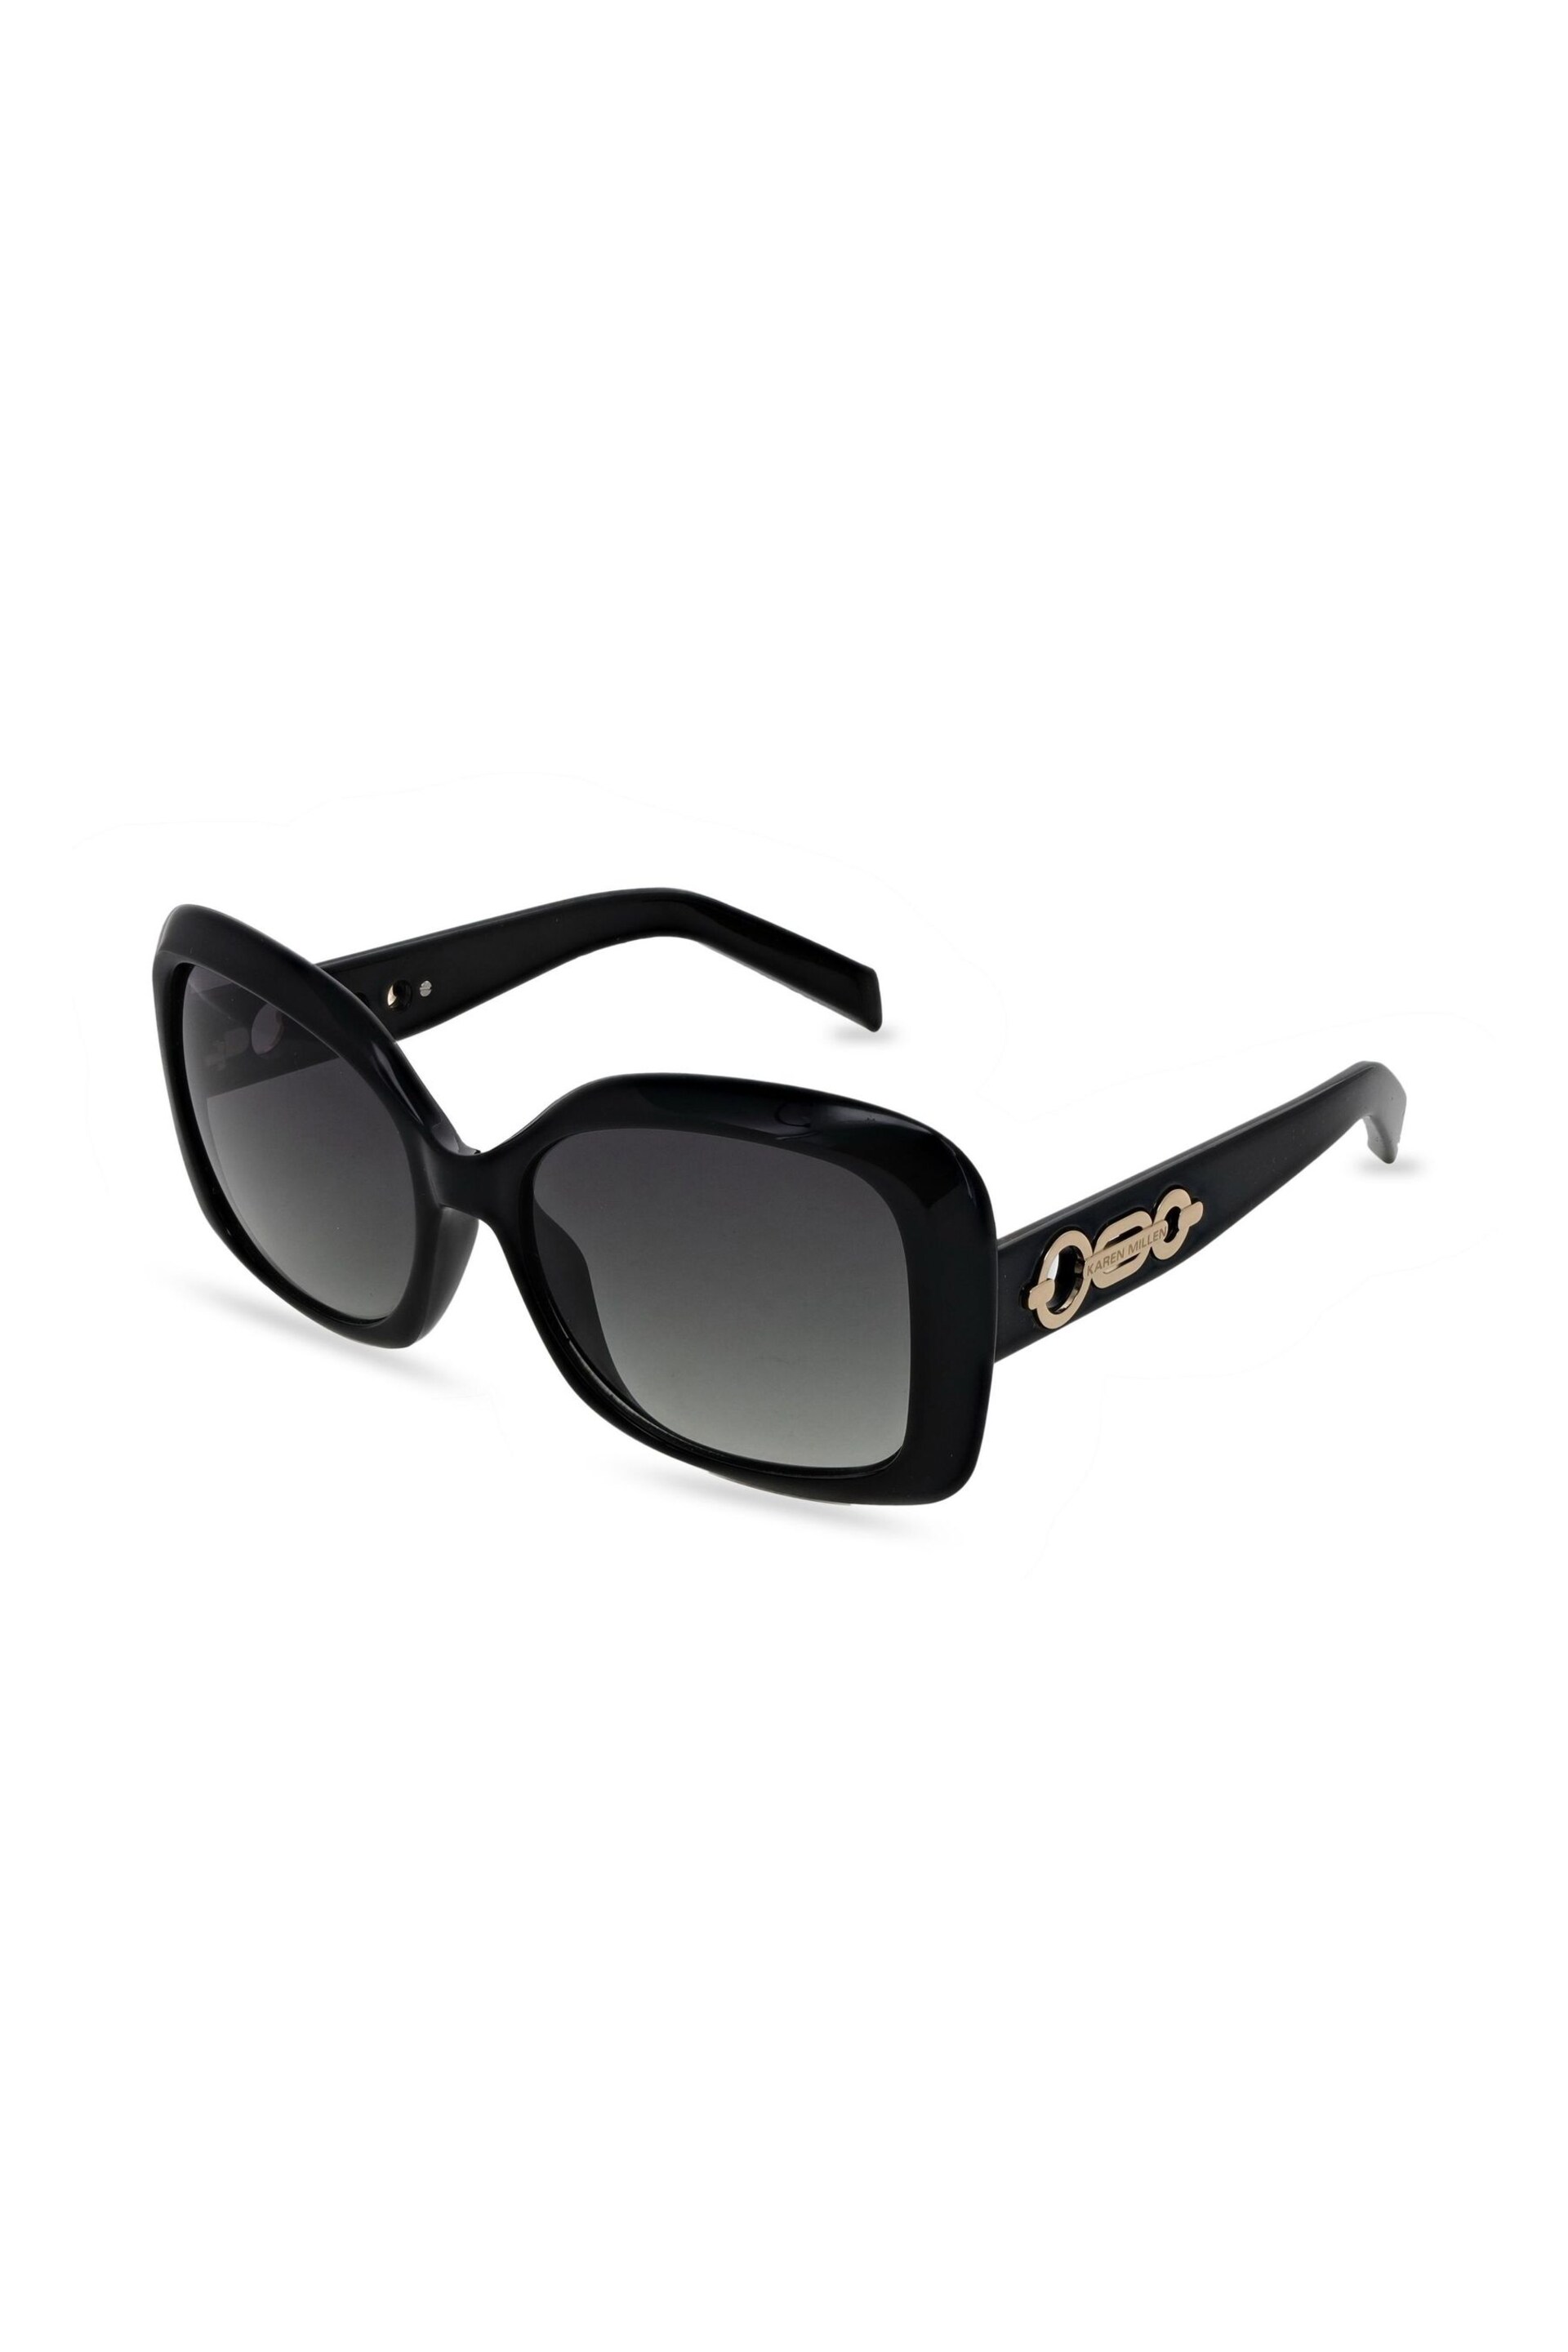 Karen Millen Black Sunglasses - Image 3 of 5